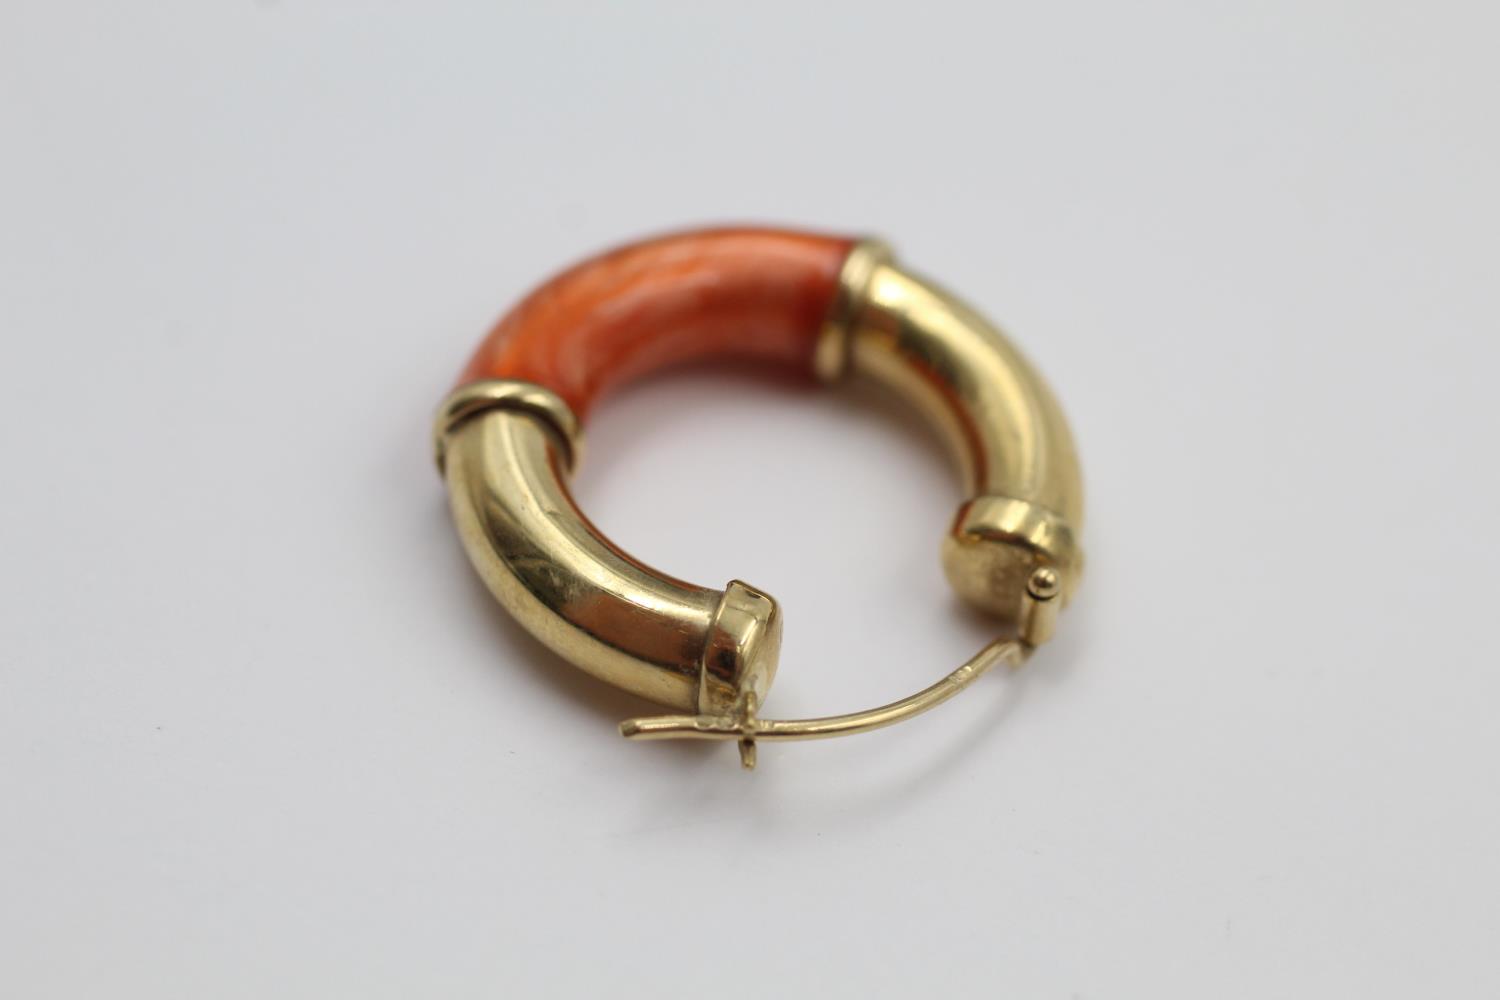 9ct gold enamel hoop earrings 4.1 grams gross - Image 5 of 5